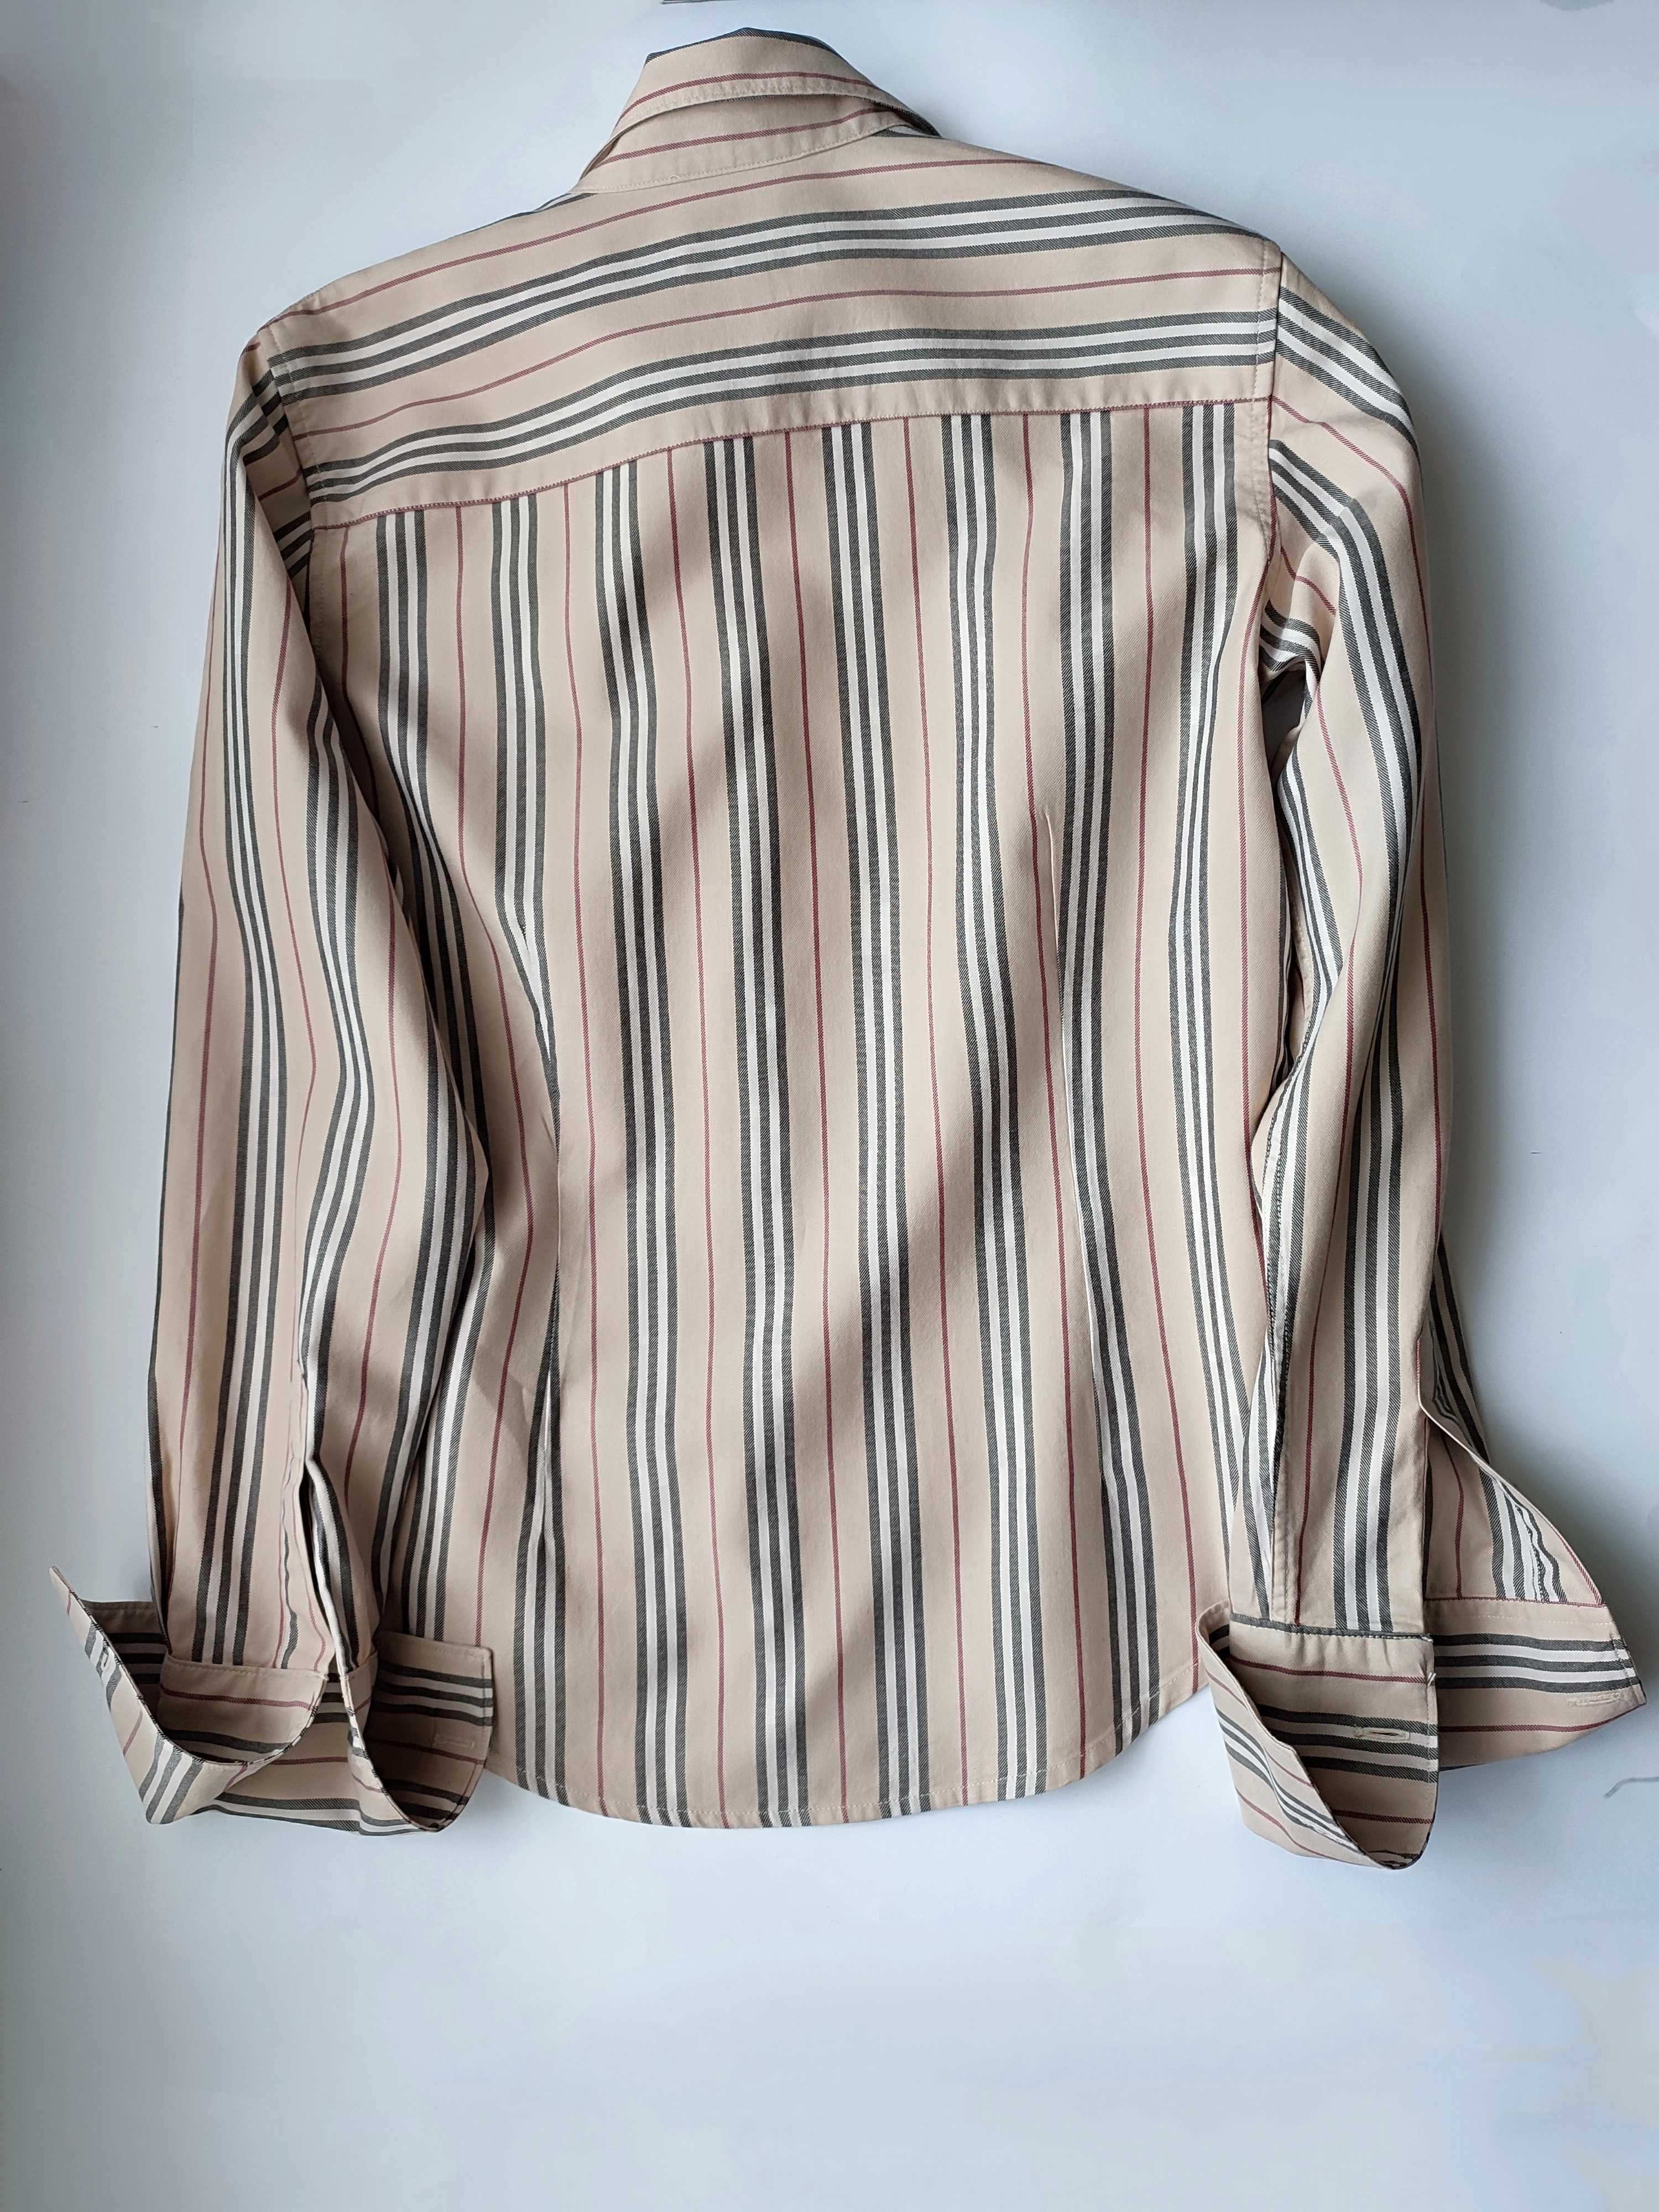 Брендовая рубашка/блузка под запонки класса люкс Burberry оригинал